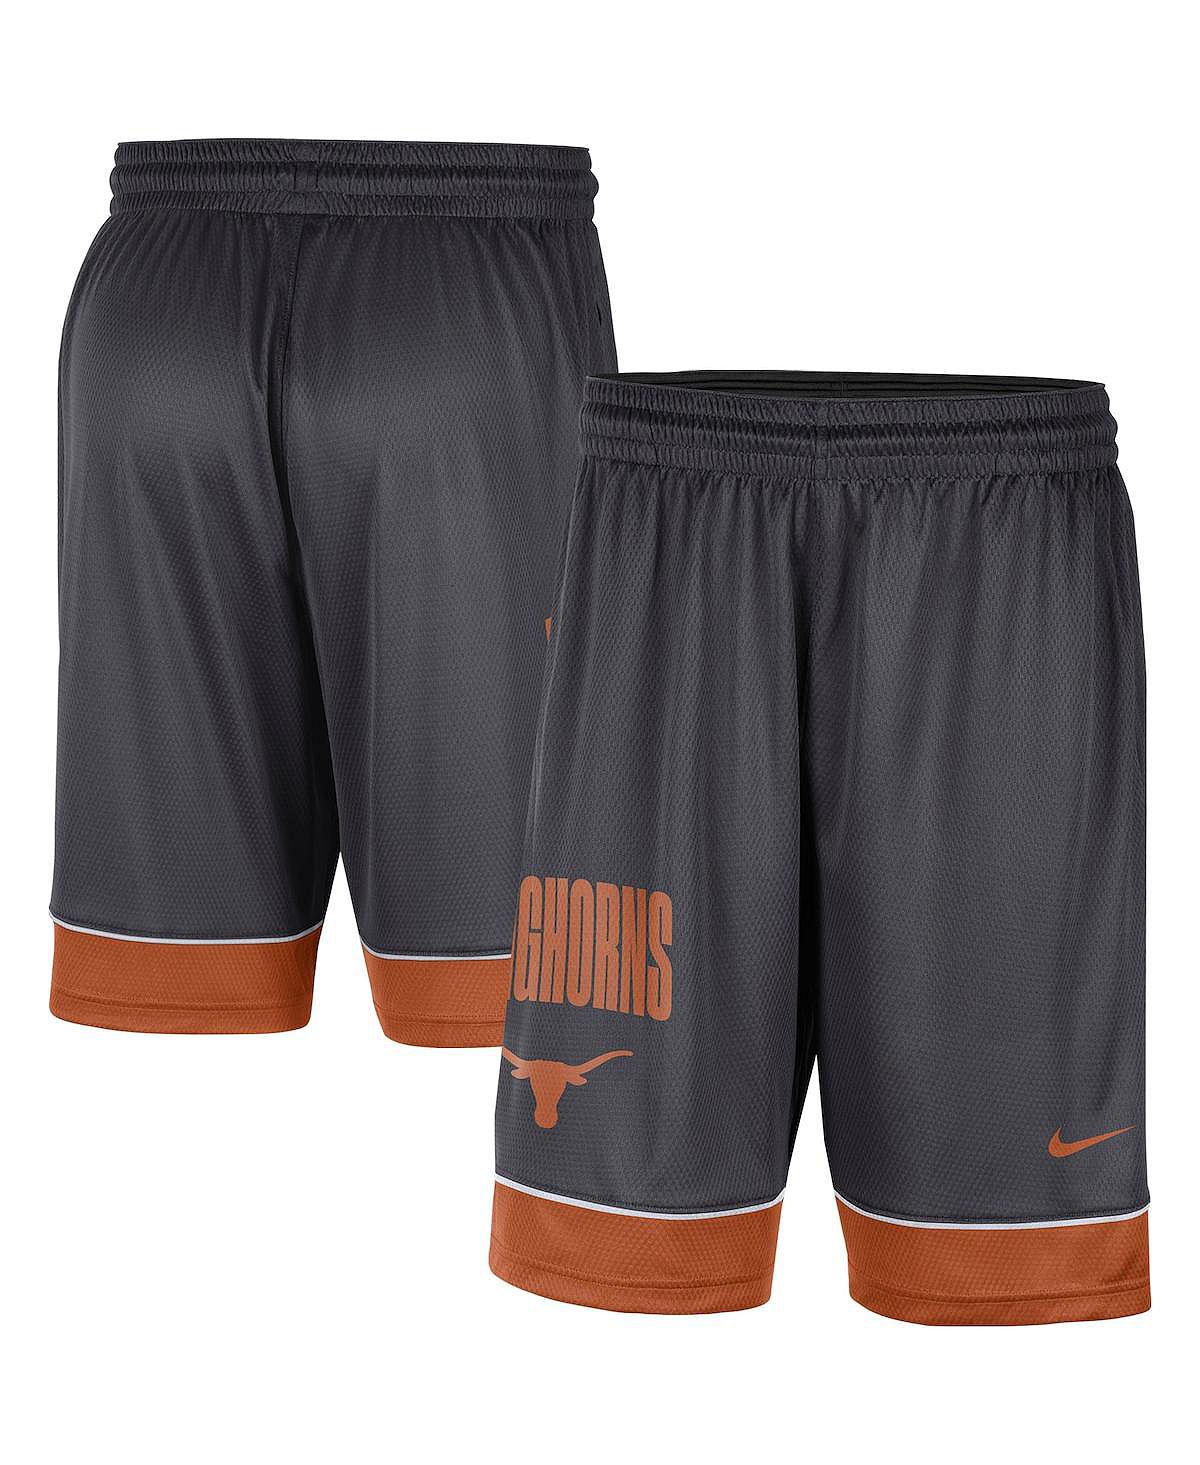 Мужские угольно-оранжевые шорты texas longhorns fast break performance Nike, мульти